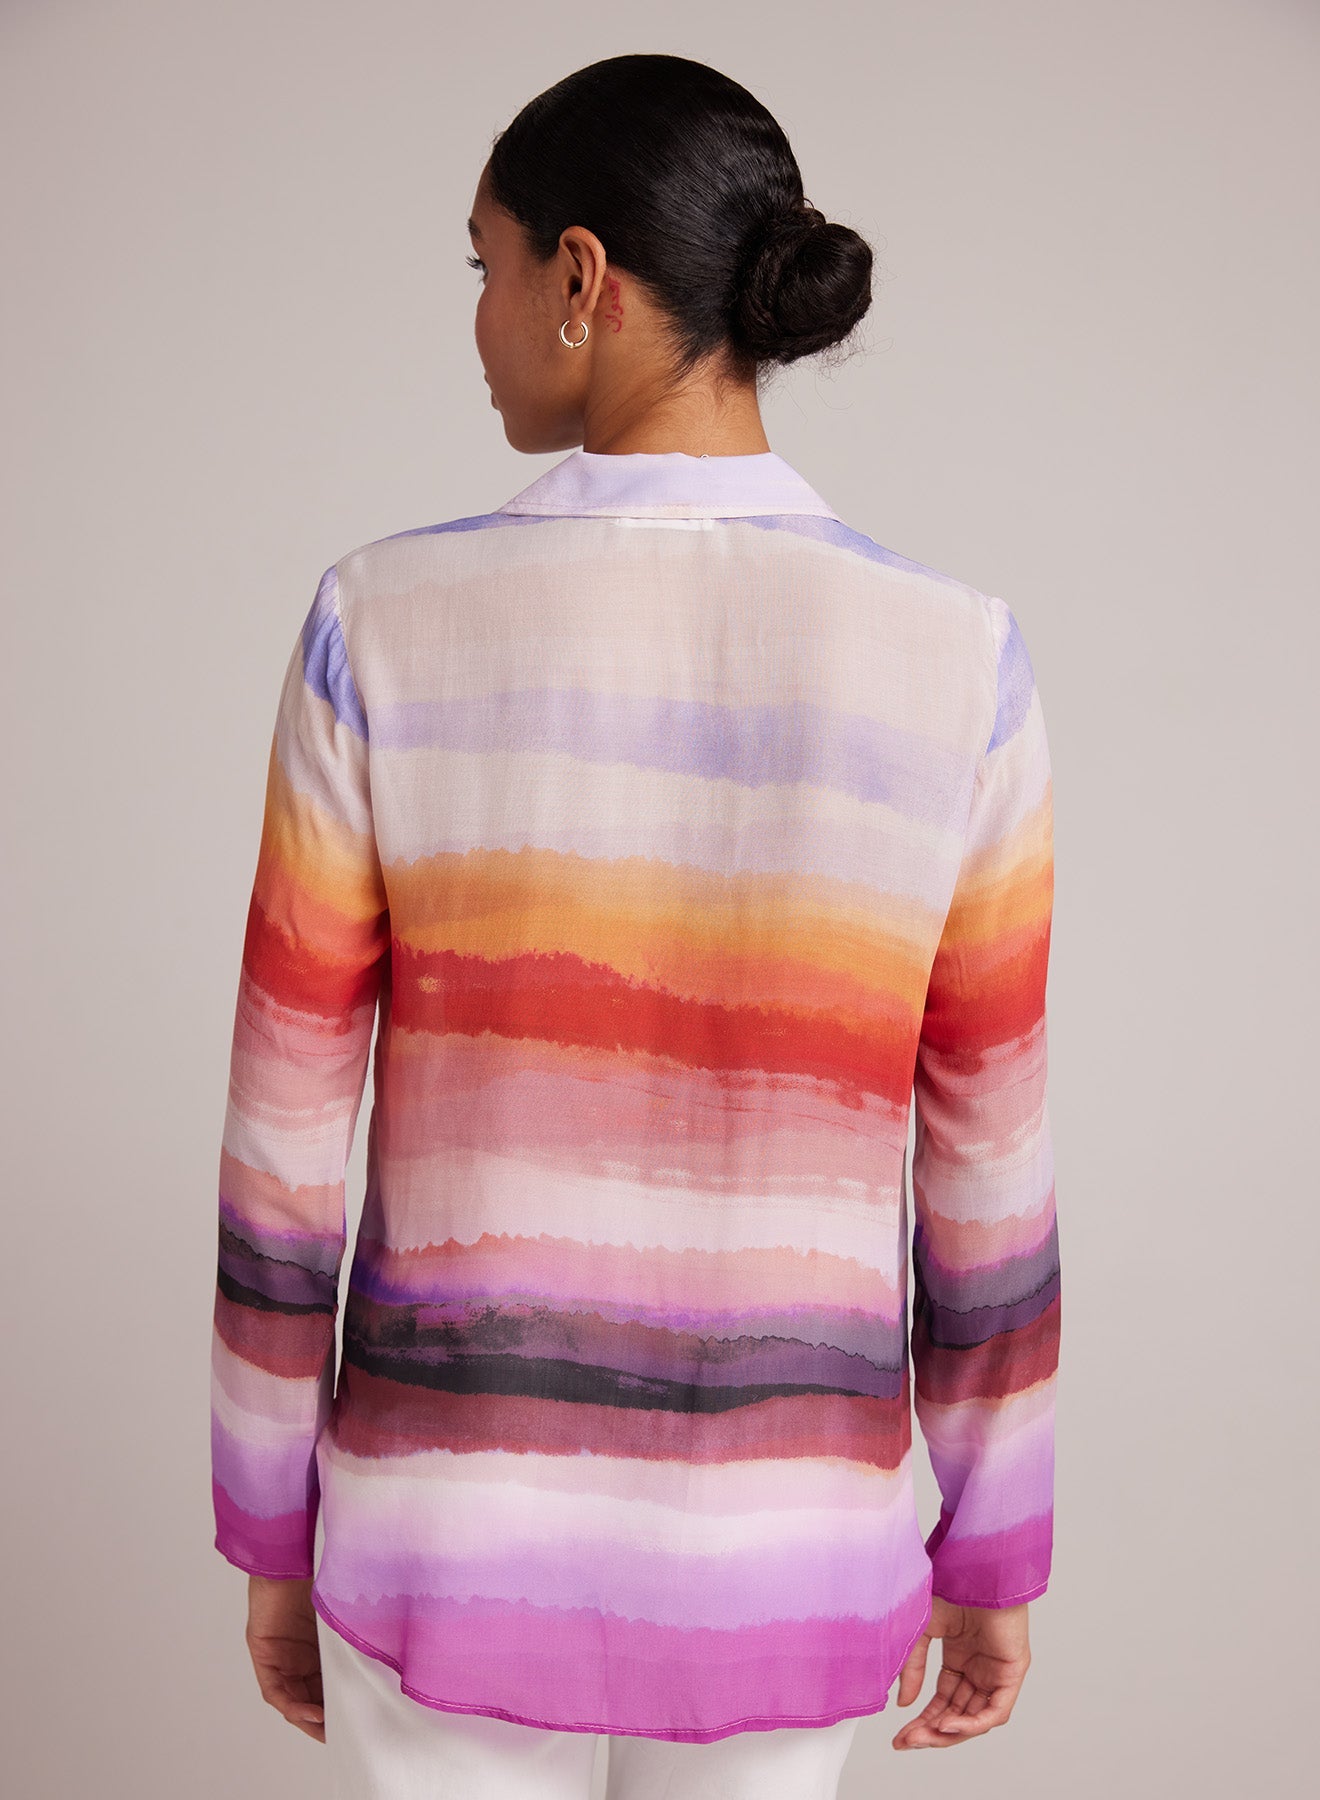 Bella DahlClean Shirt - Canyon Stripe PrintTops